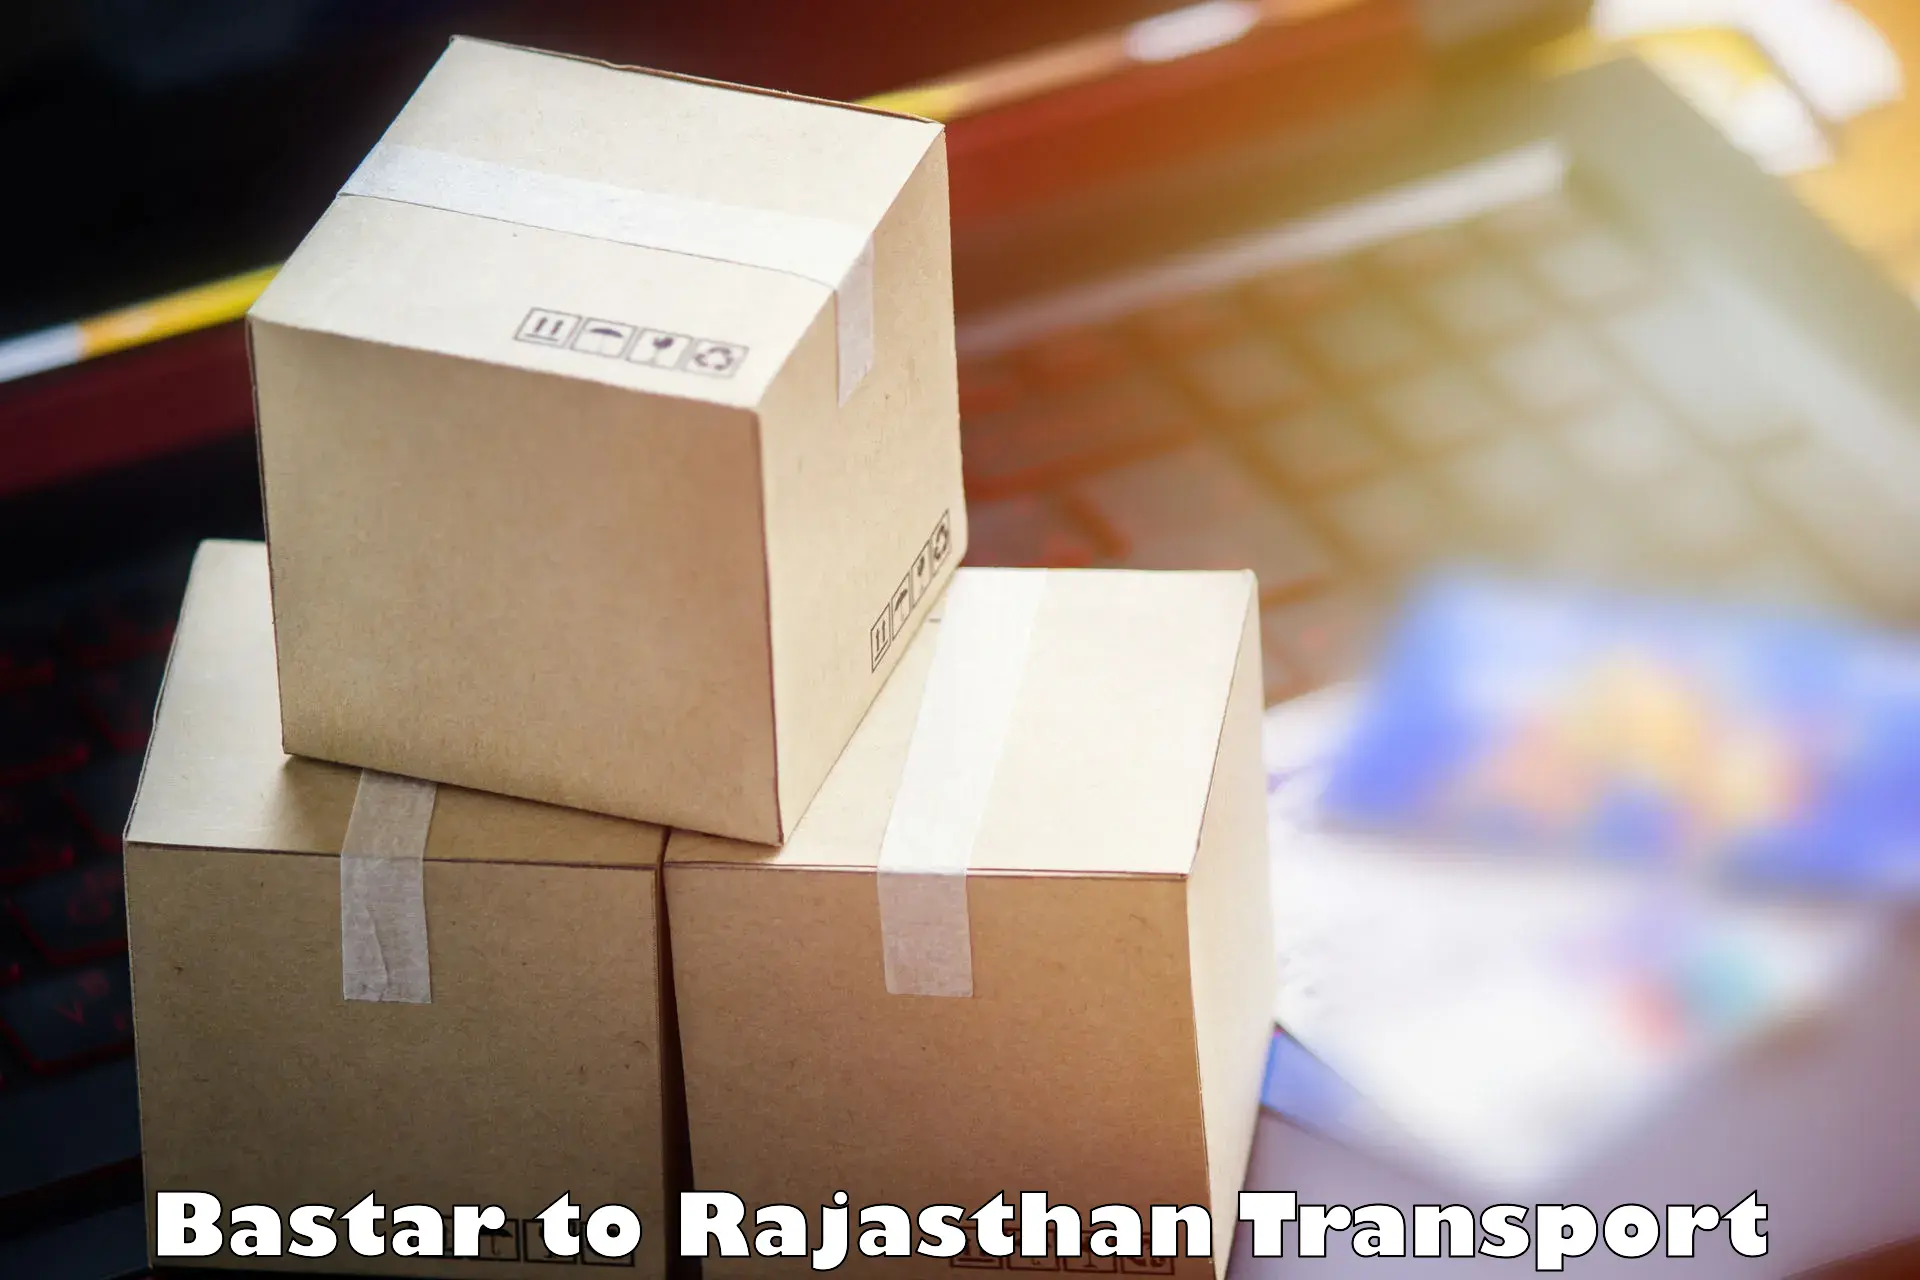 Online transport service Bastar to Malsisar